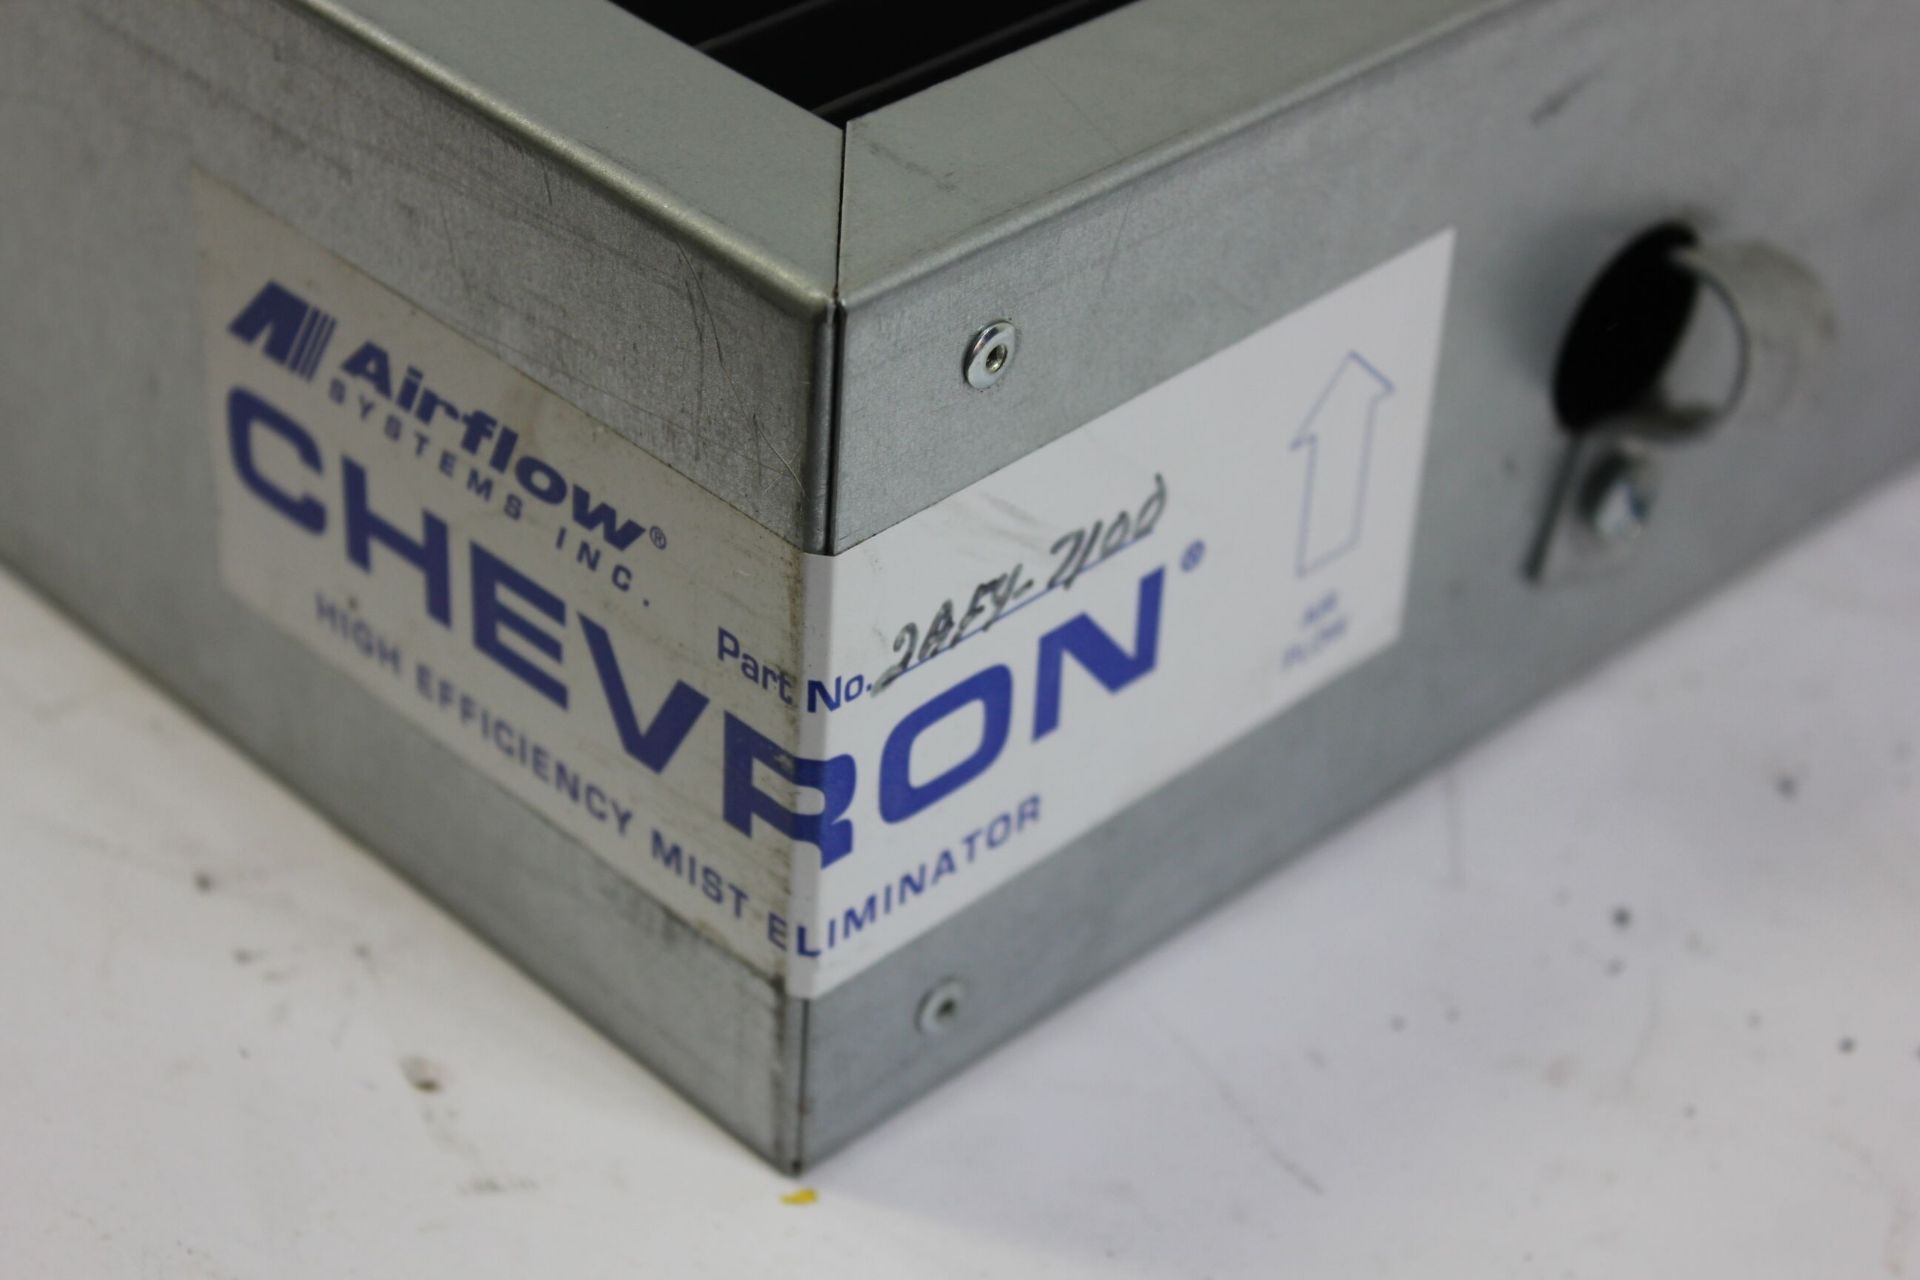 2 new chevron mist eliminators - Image 2 of 2